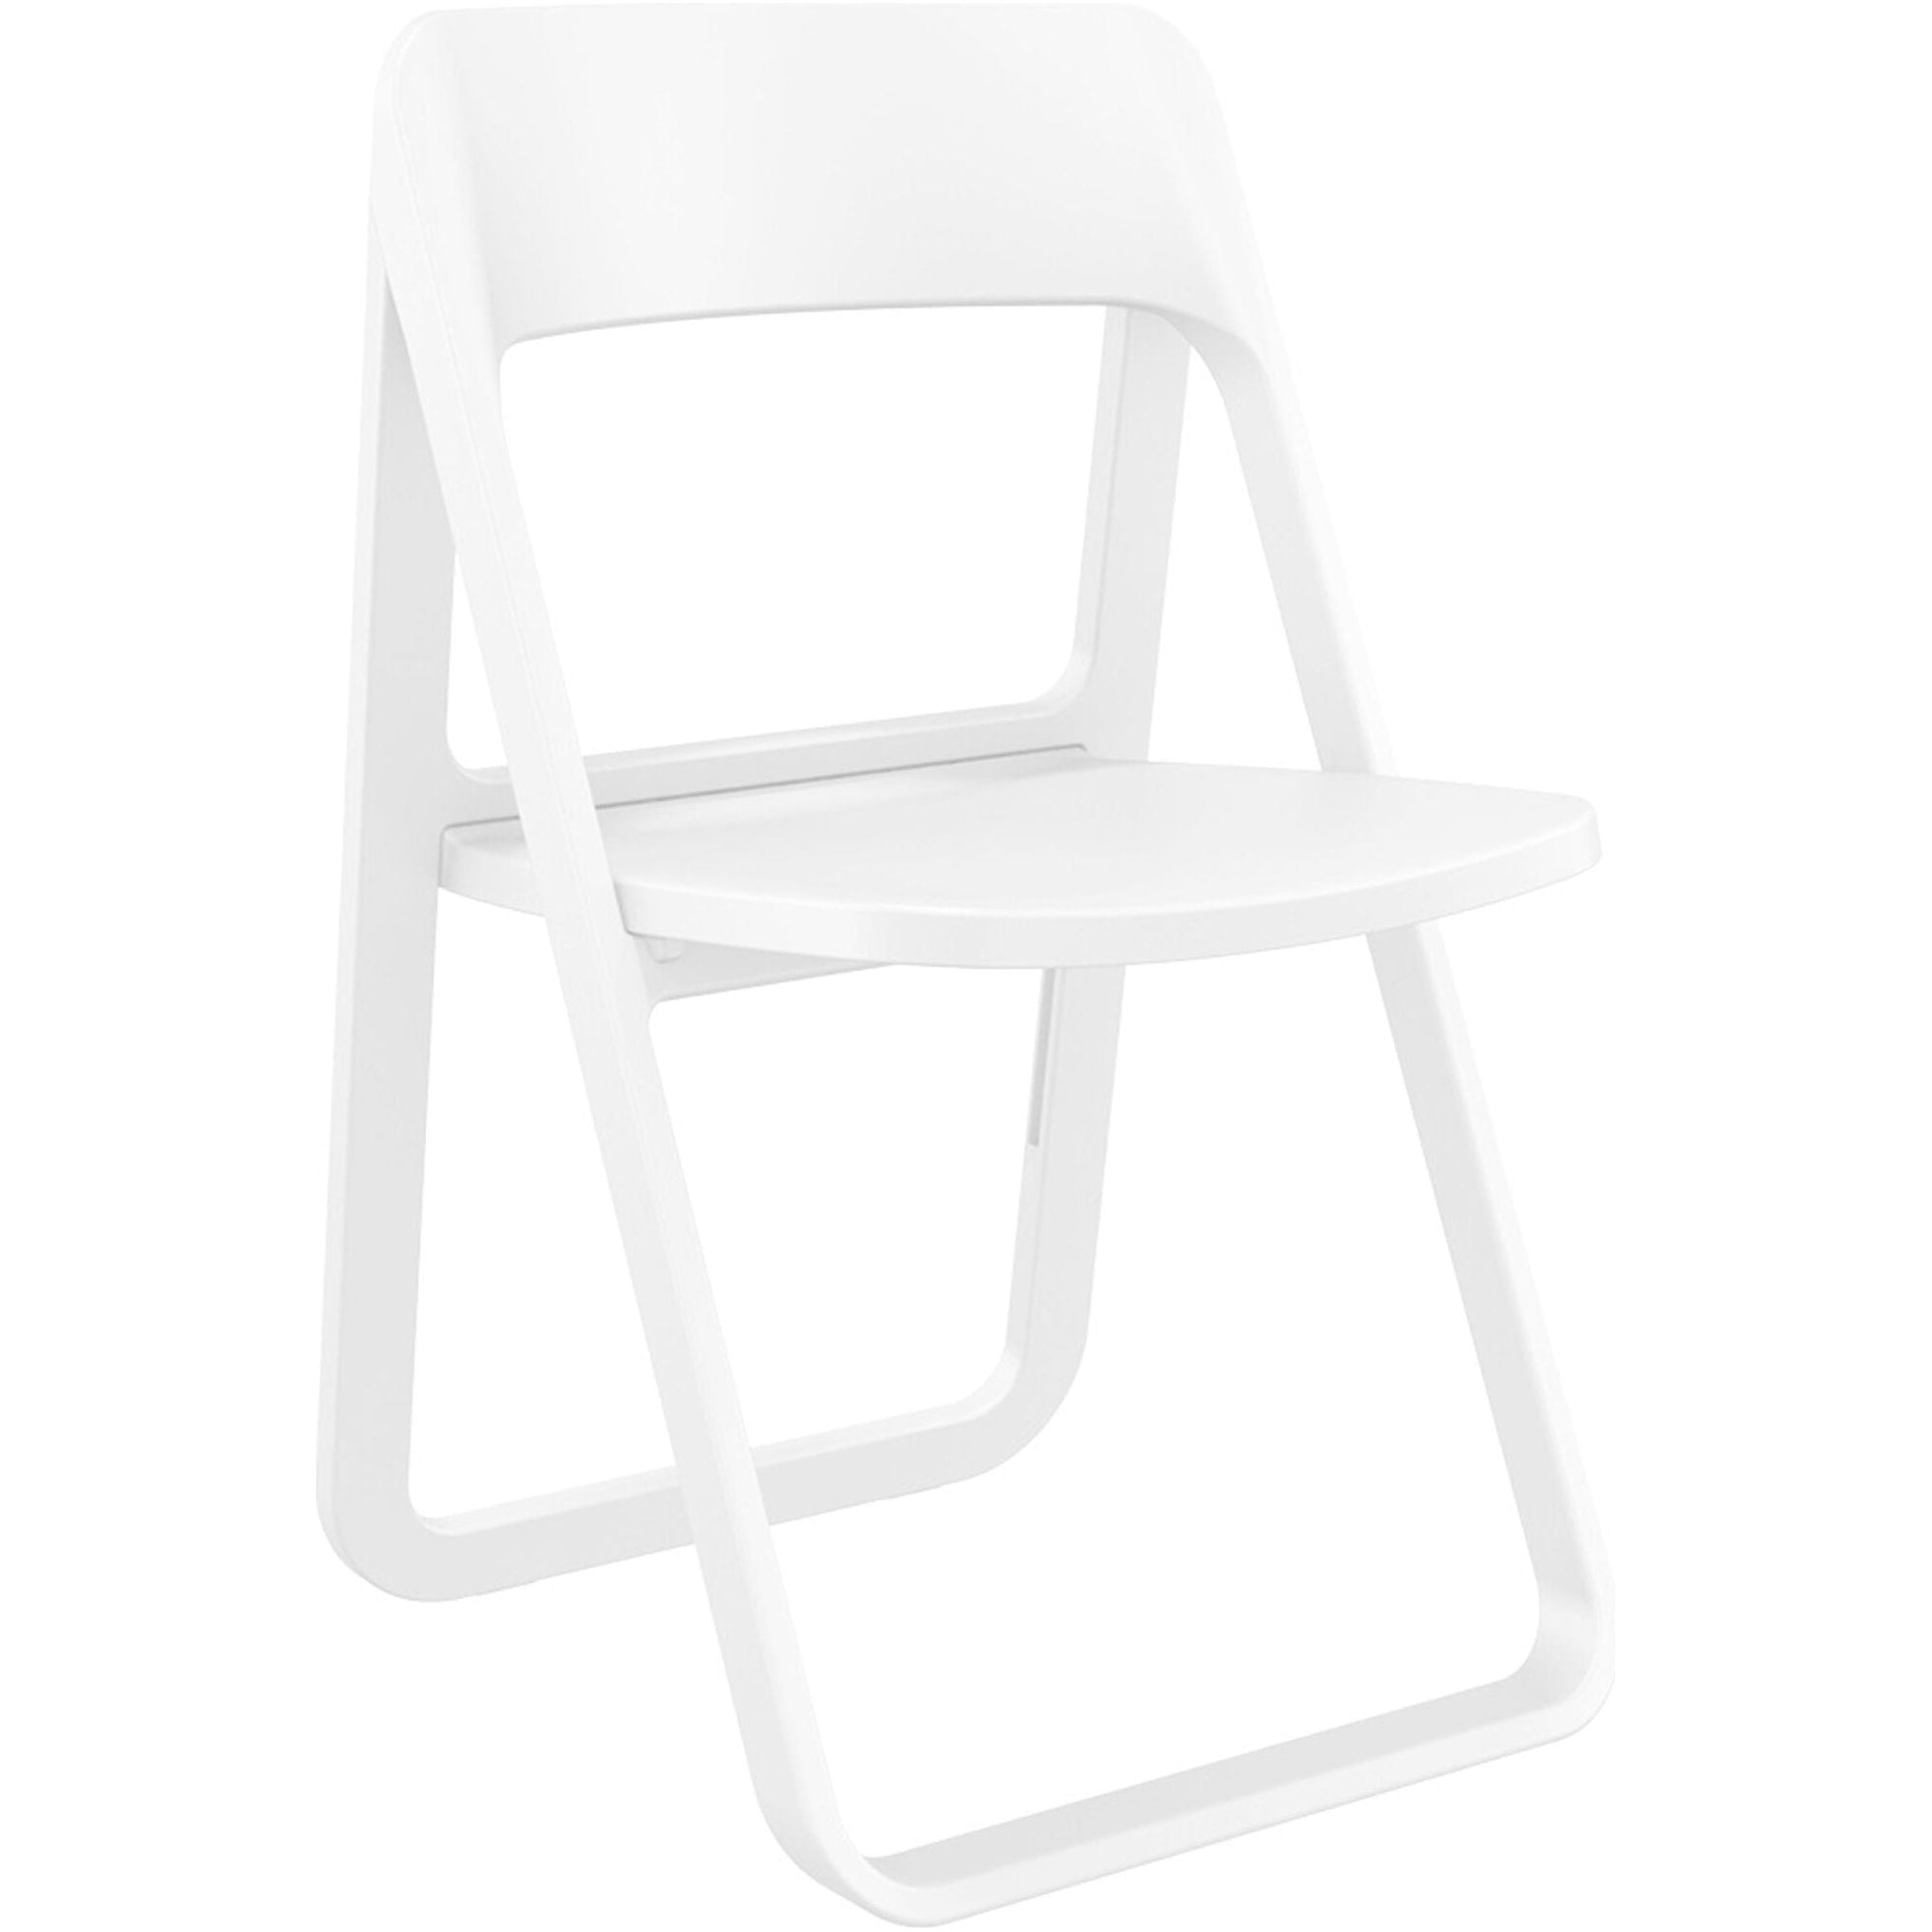 Garbar dream opvouwbare stoel wit